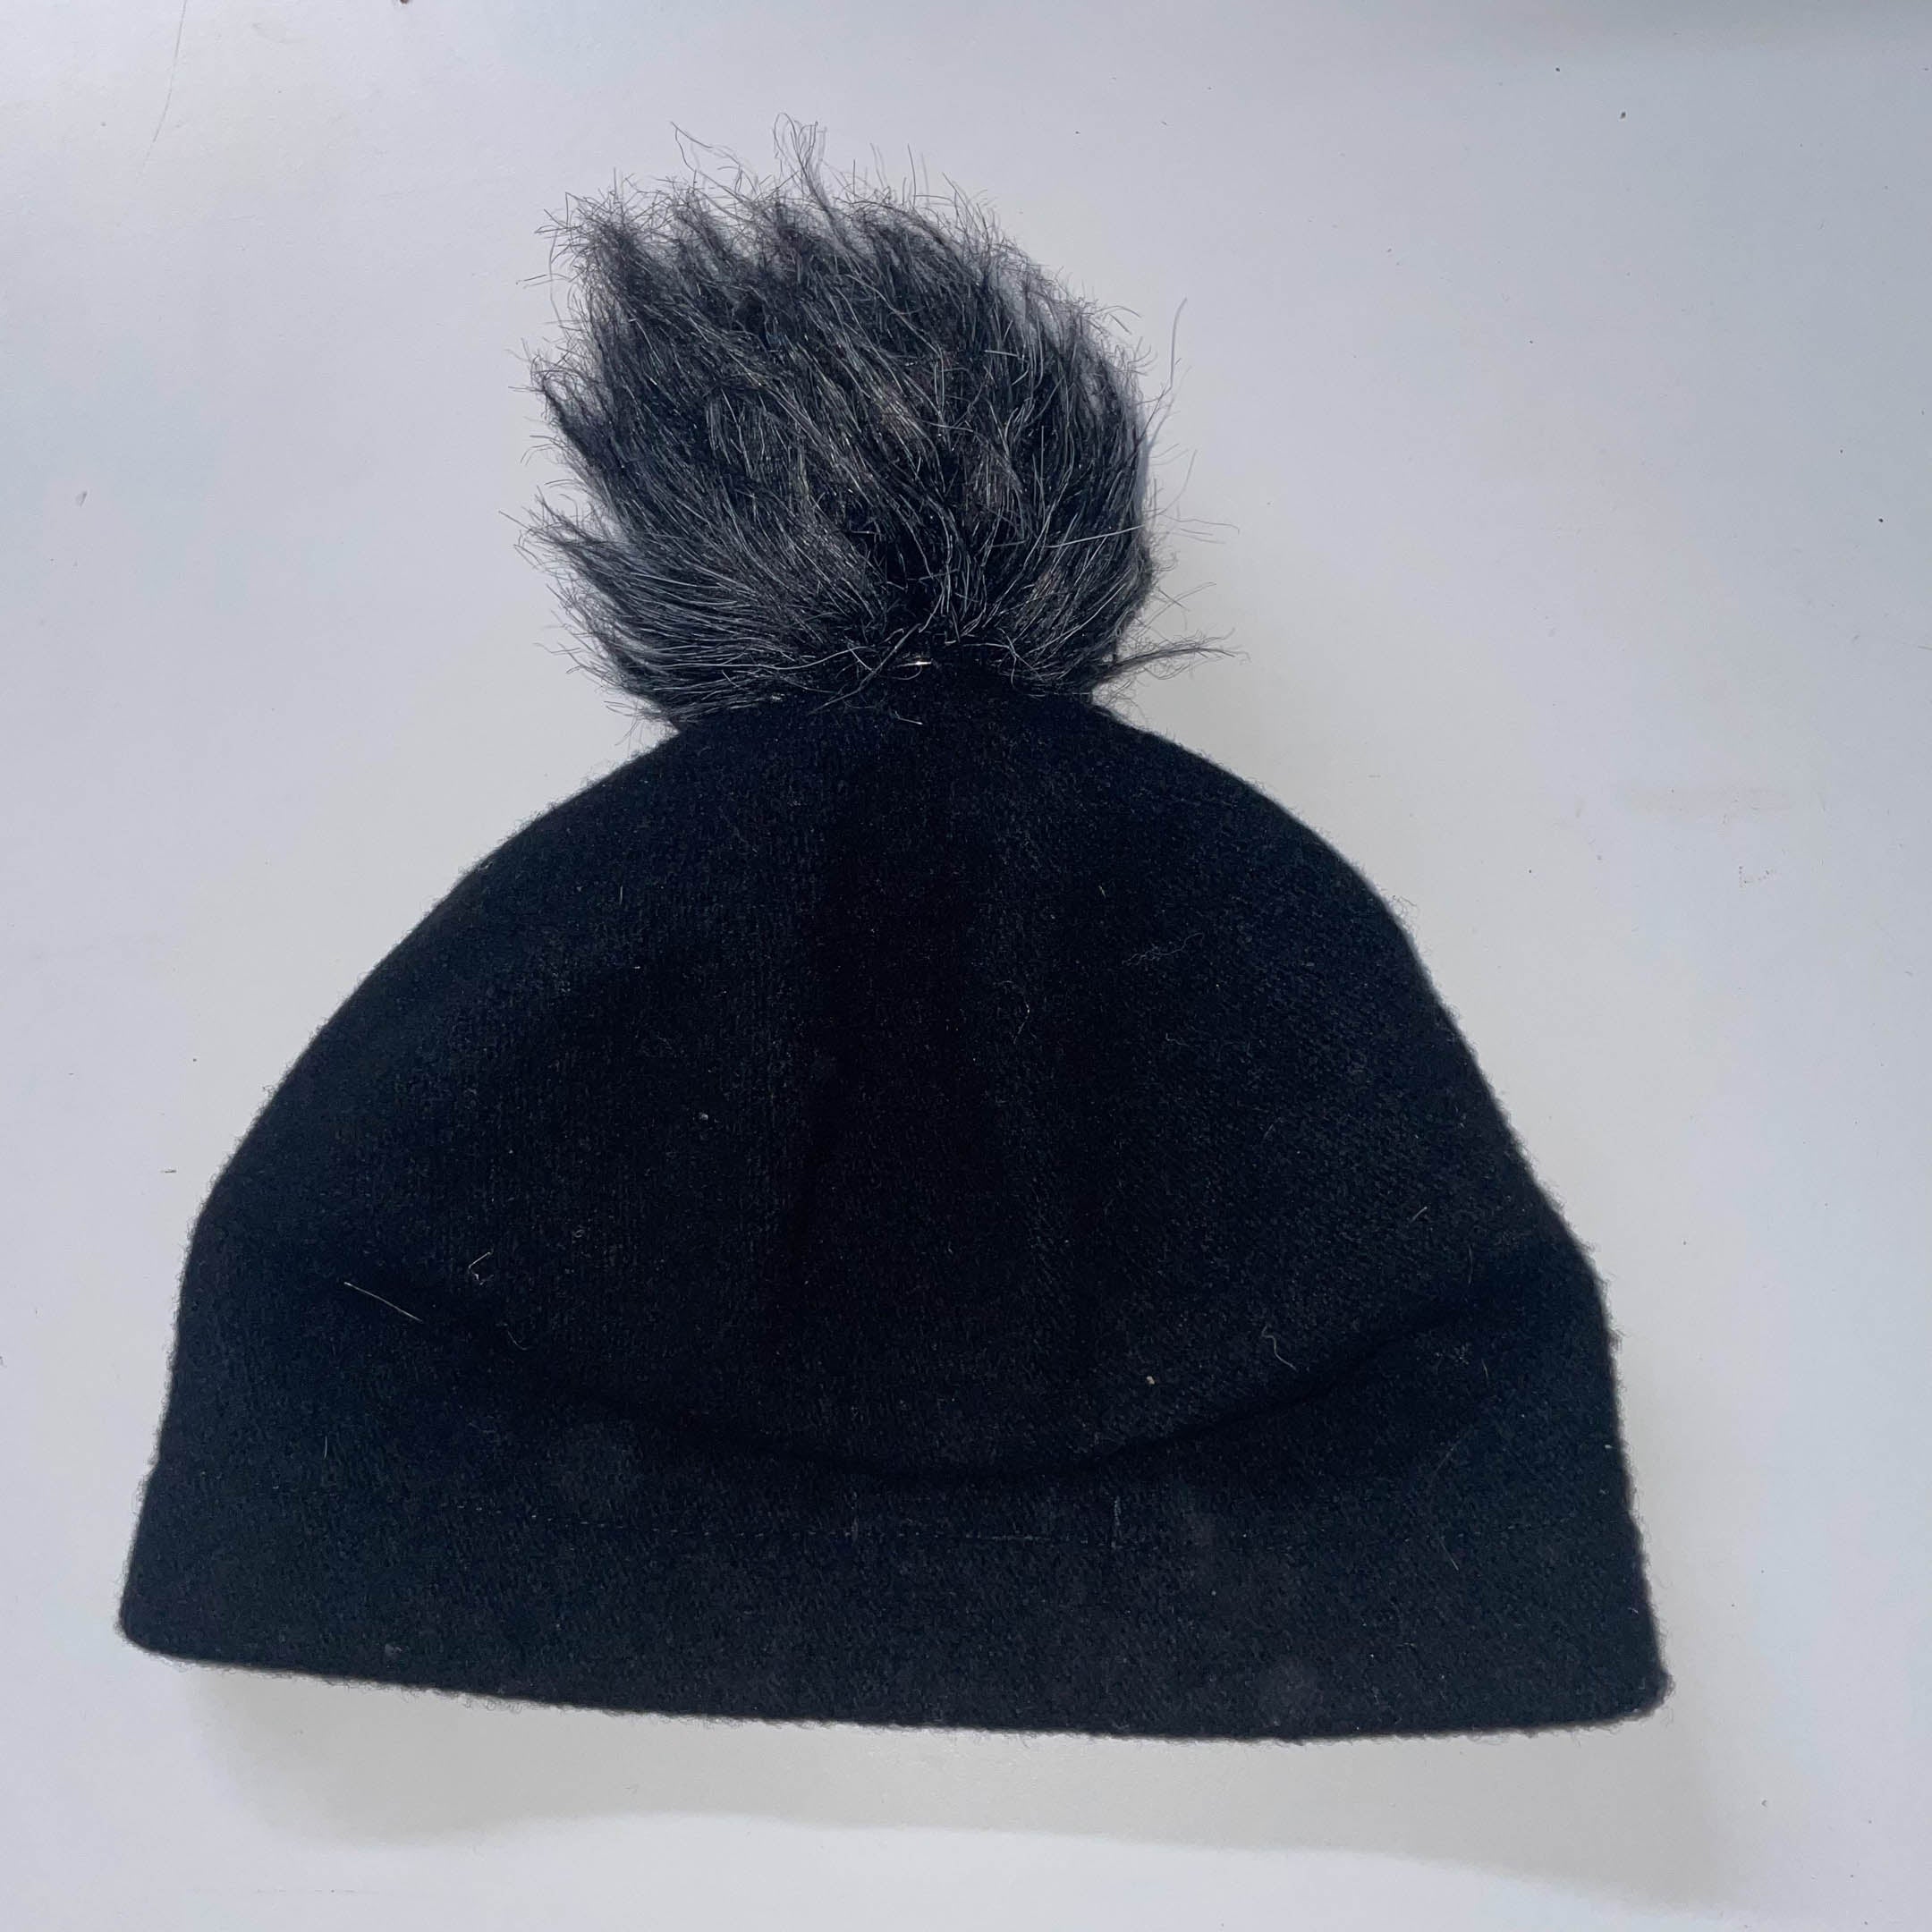 Vintage Seeberger black beanie hat